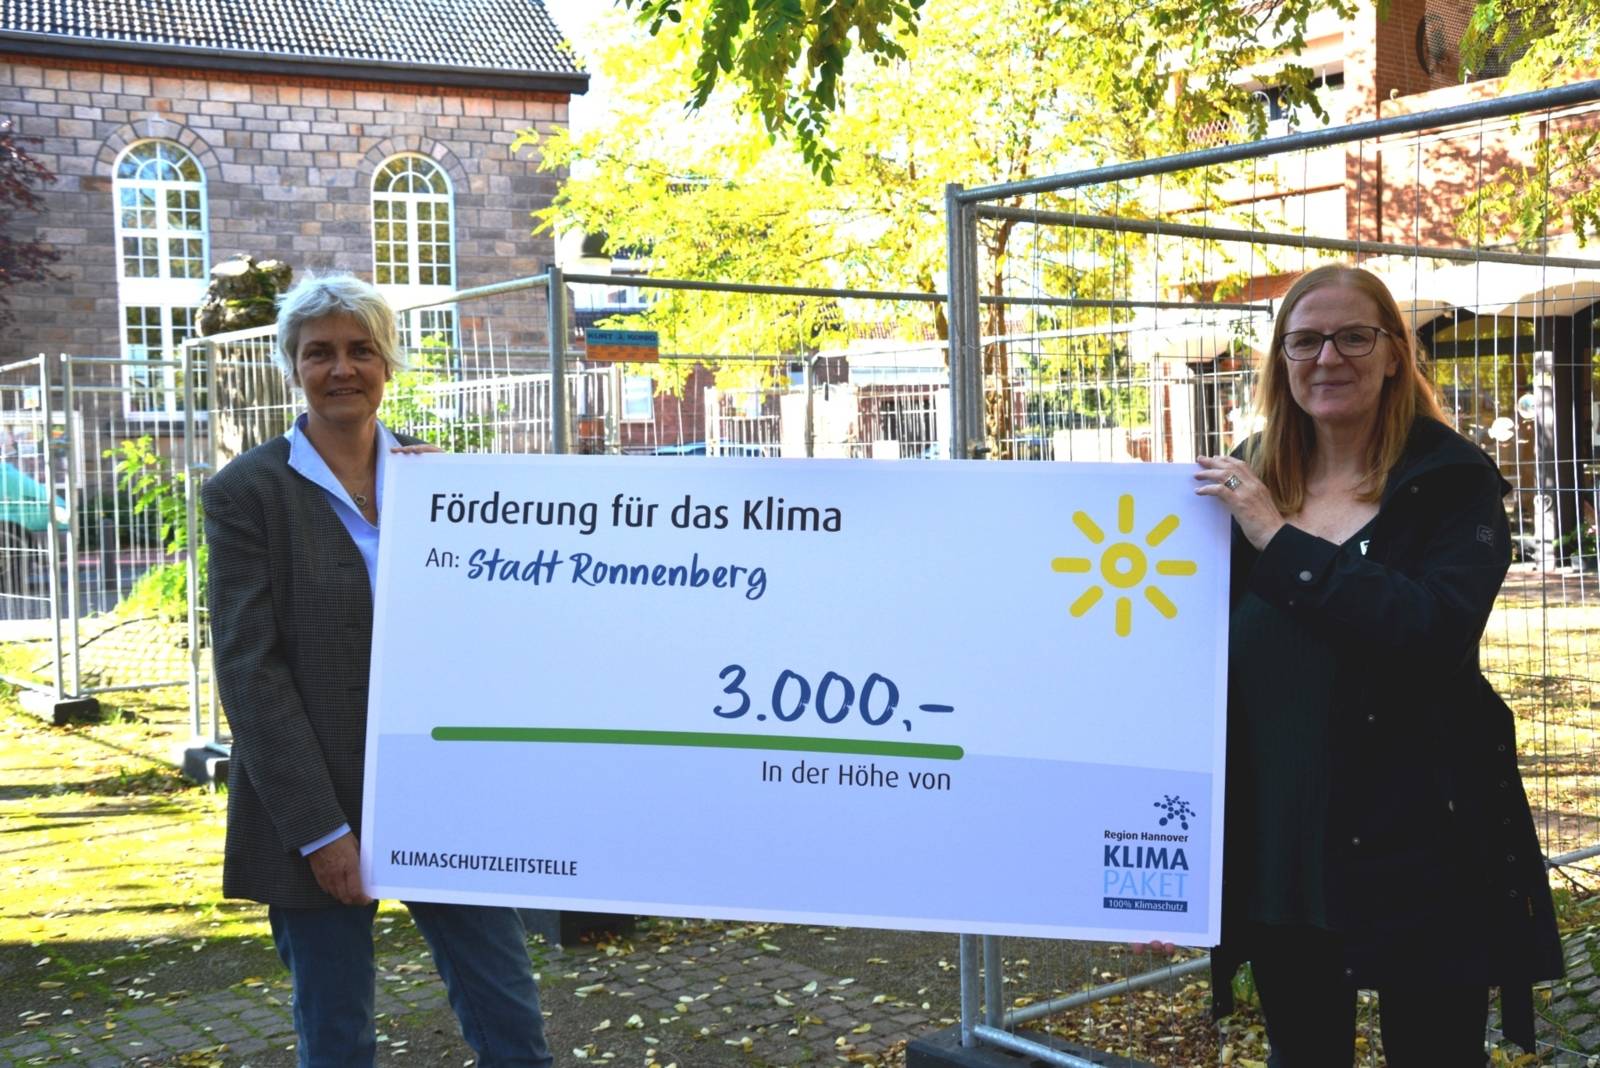 Zwei Frauen, die ein Plakat halten, auf dem steht: Förderung für das Klima - An Stadt Ronnenberg - Betrag: 3000 Euro